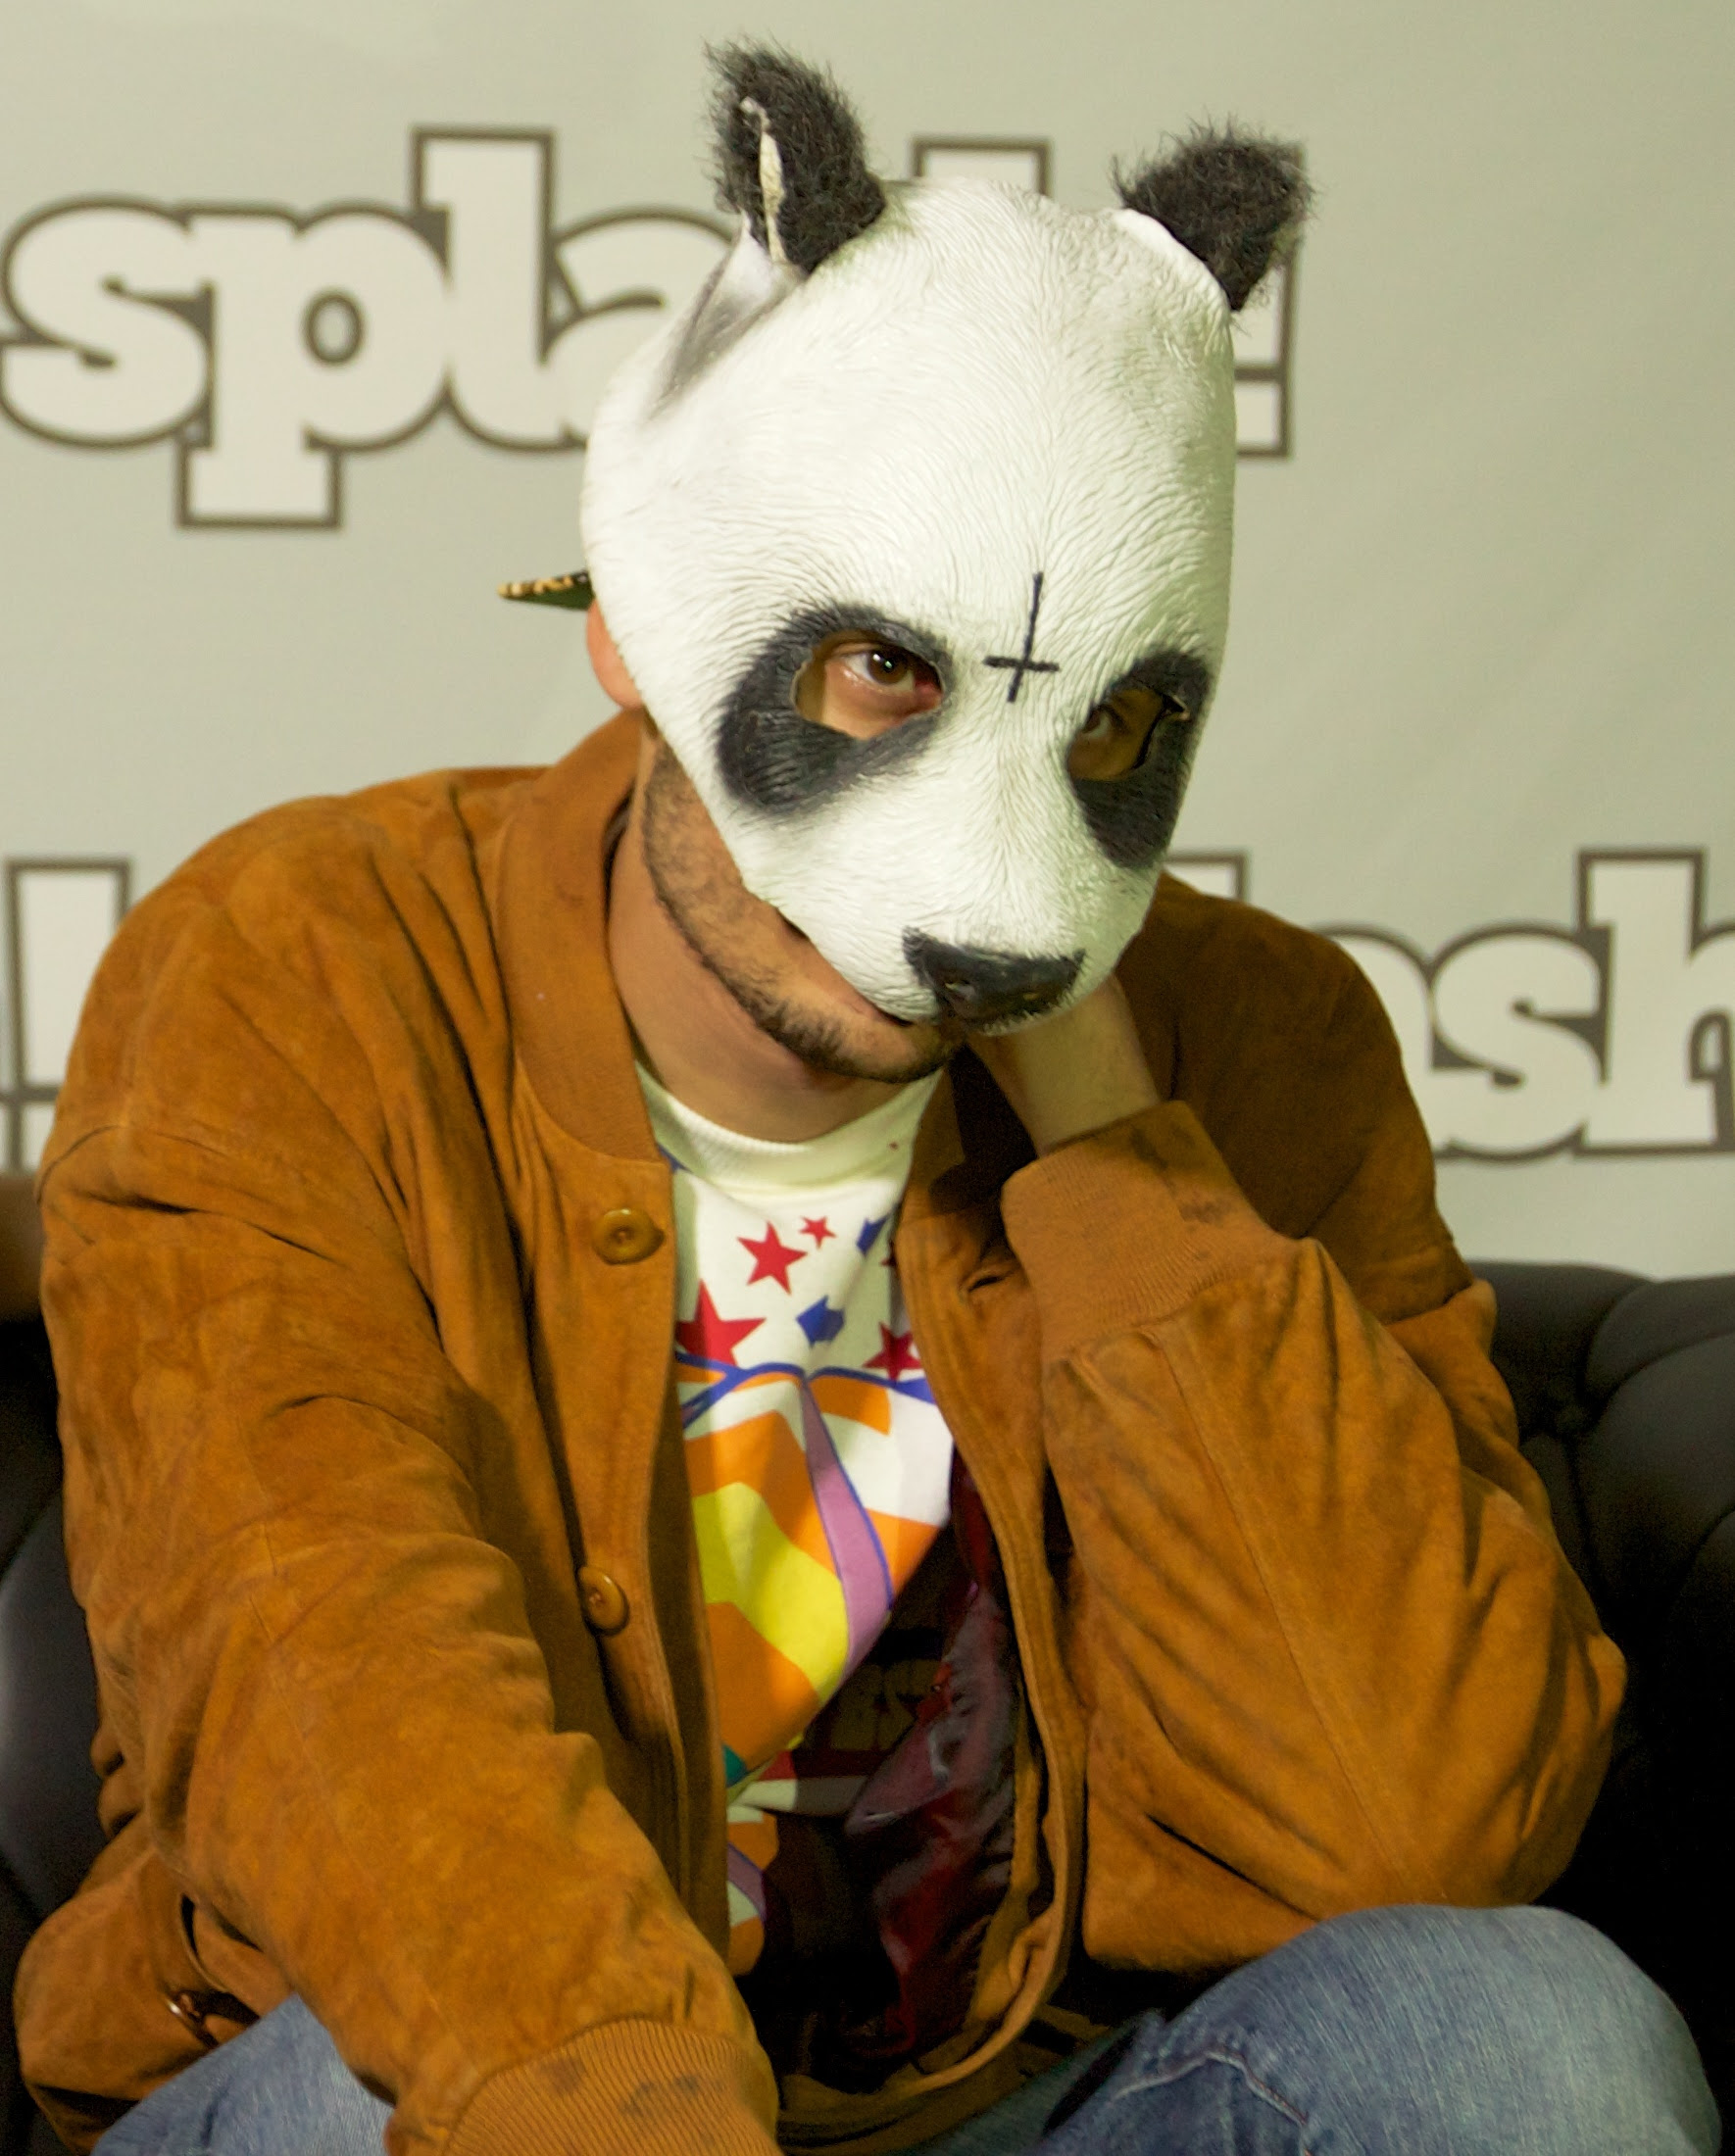 Cro, l'homme au masque de panda / photo : Der Robert (source : flickr)